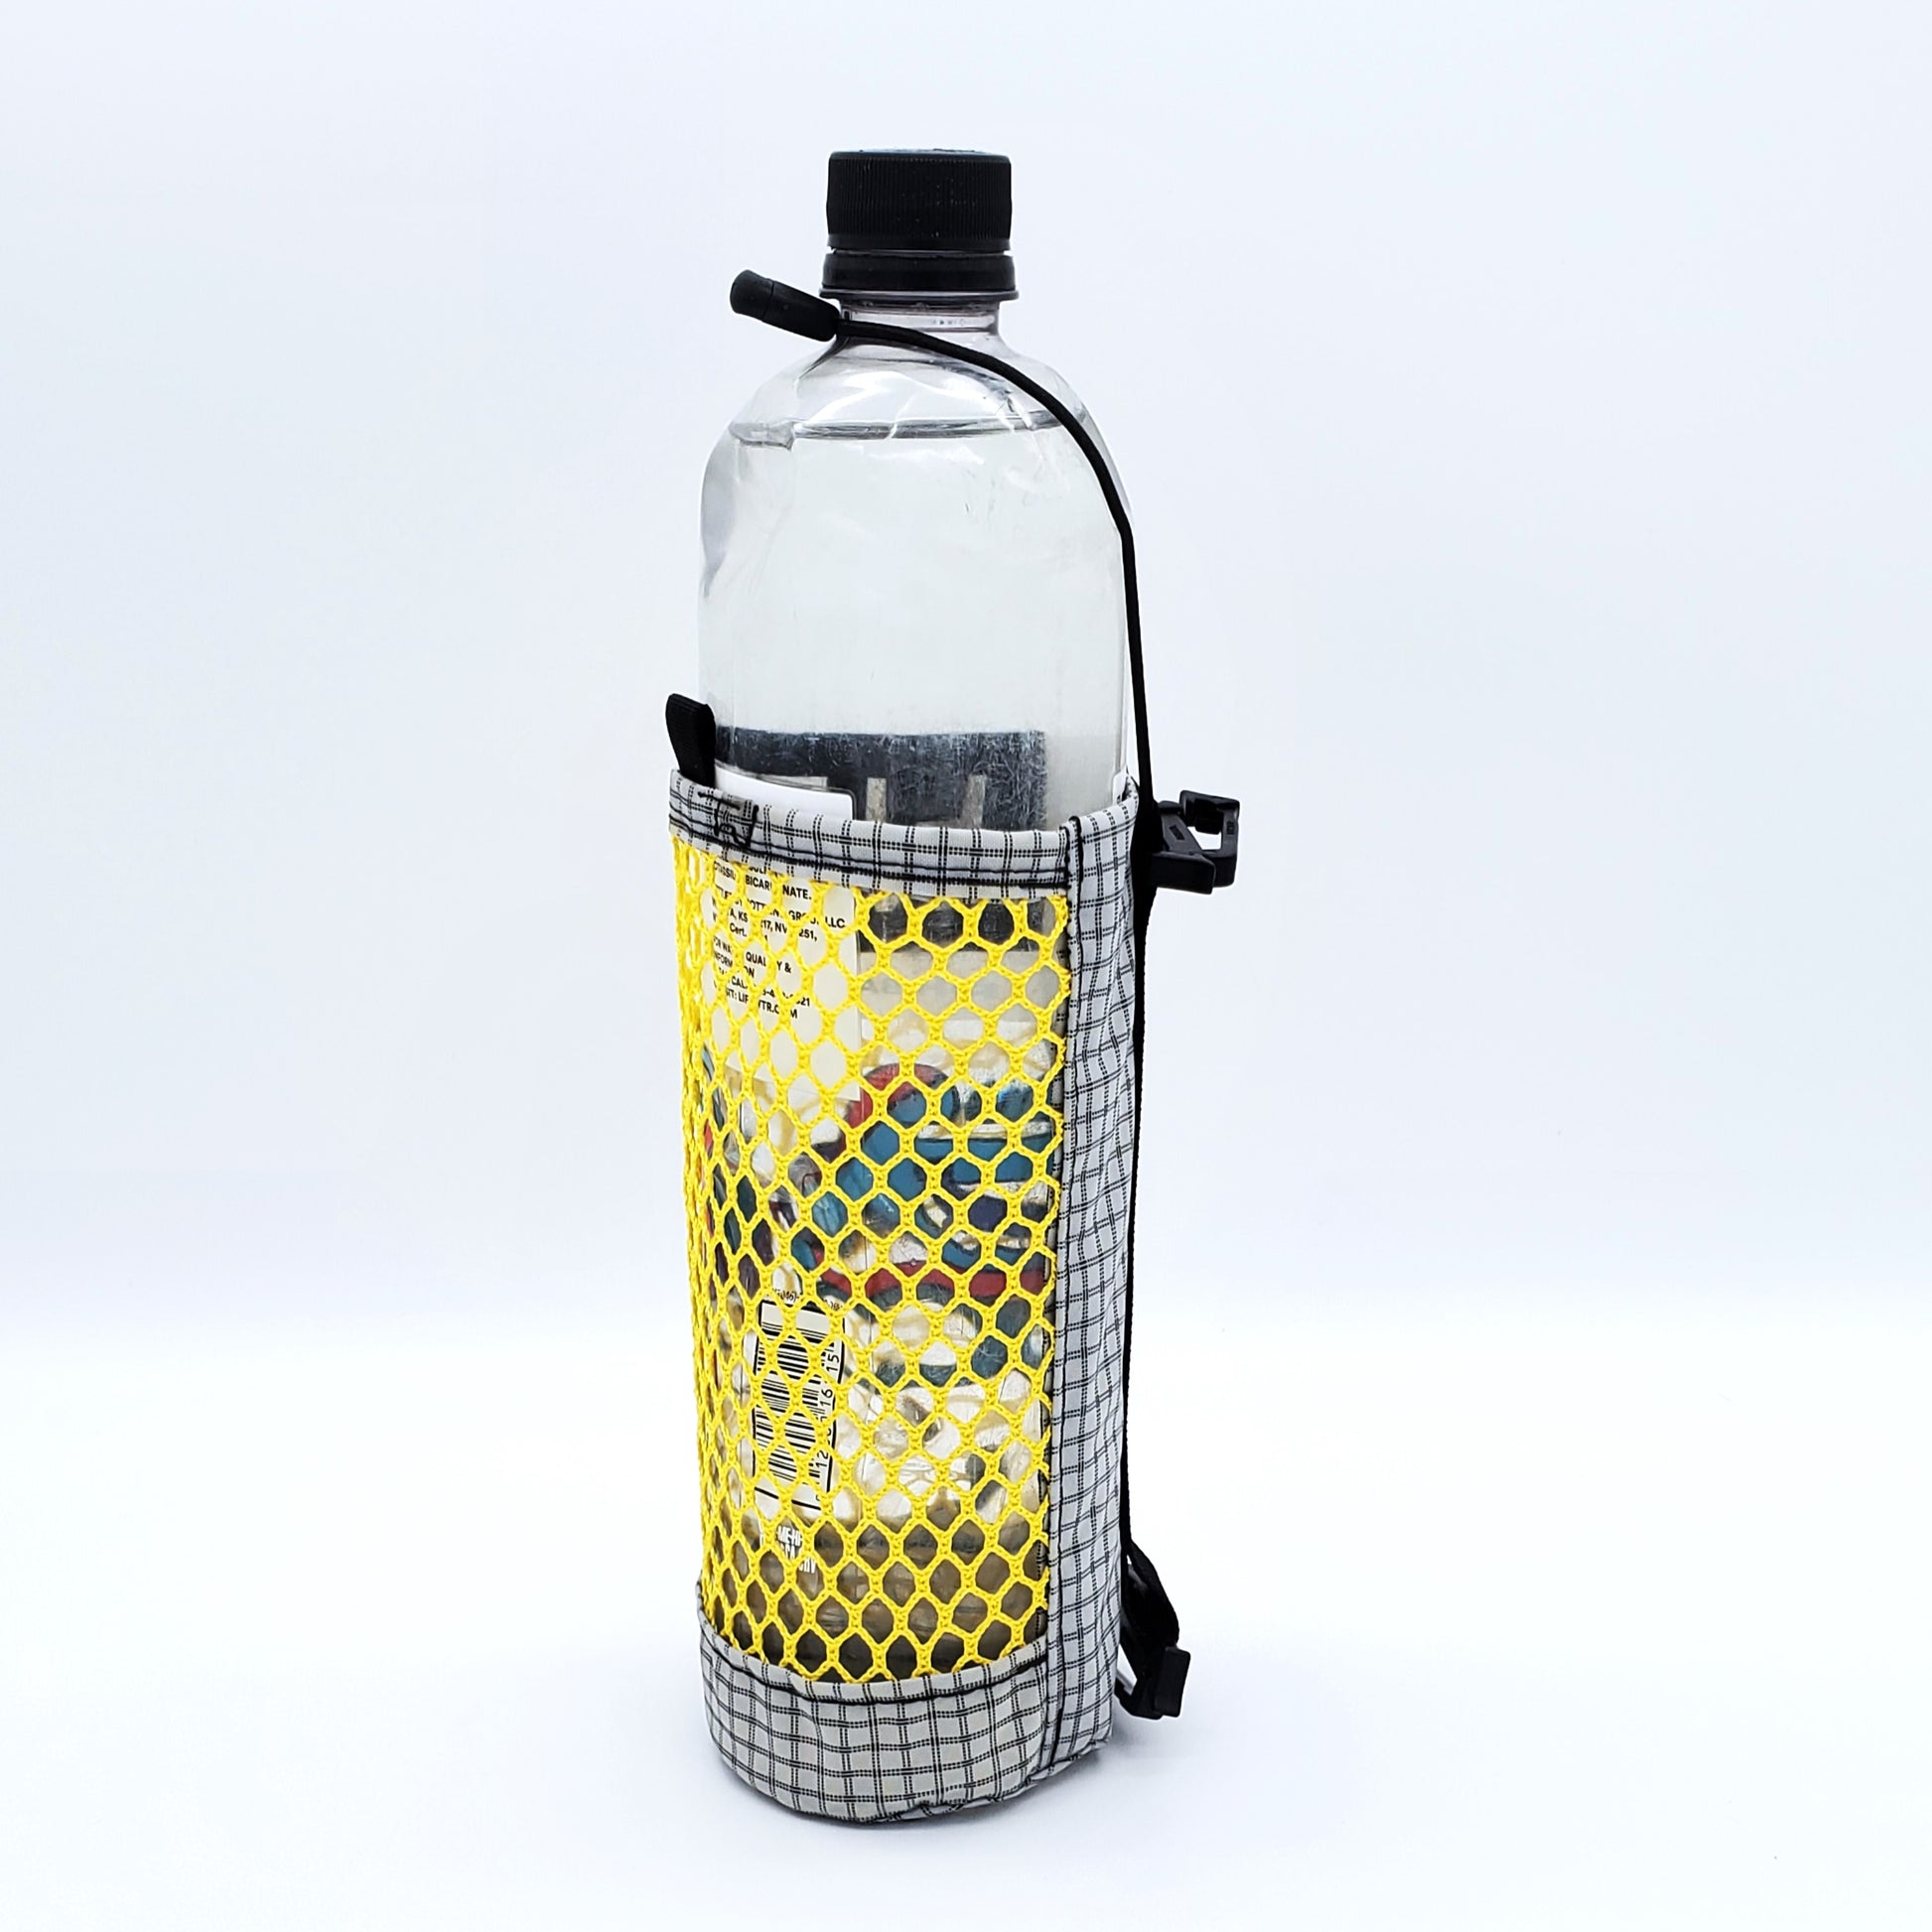 Porter Water Bottle Holder - 20 oz